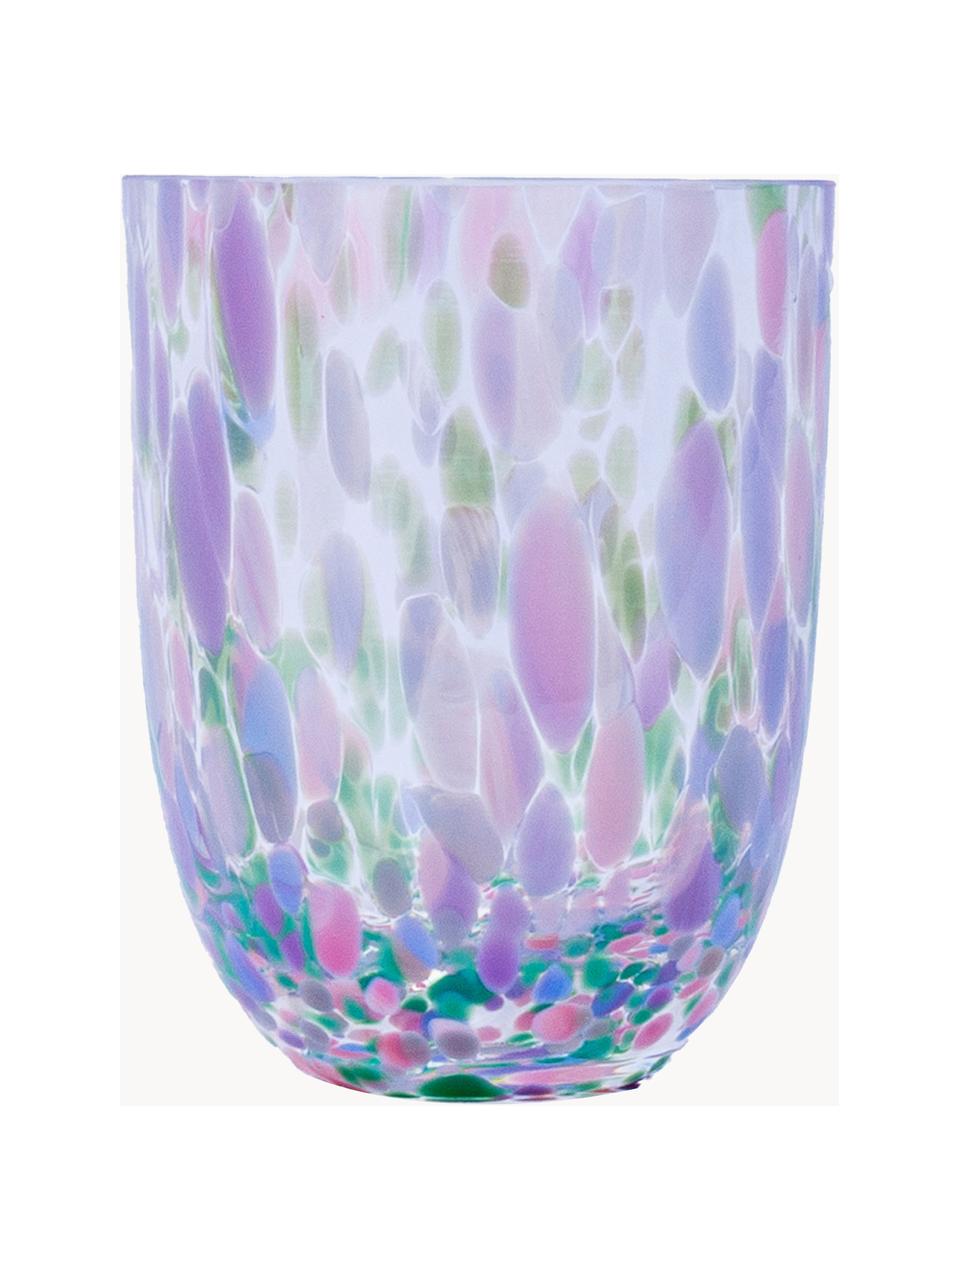 Sada ručně vyrobených sklenic Big Confetti, 6 dílů, Sklo, Transparentní, odstíny růžové, modré a zelené, Ø 7 cm, V 10 cm, 250 ml